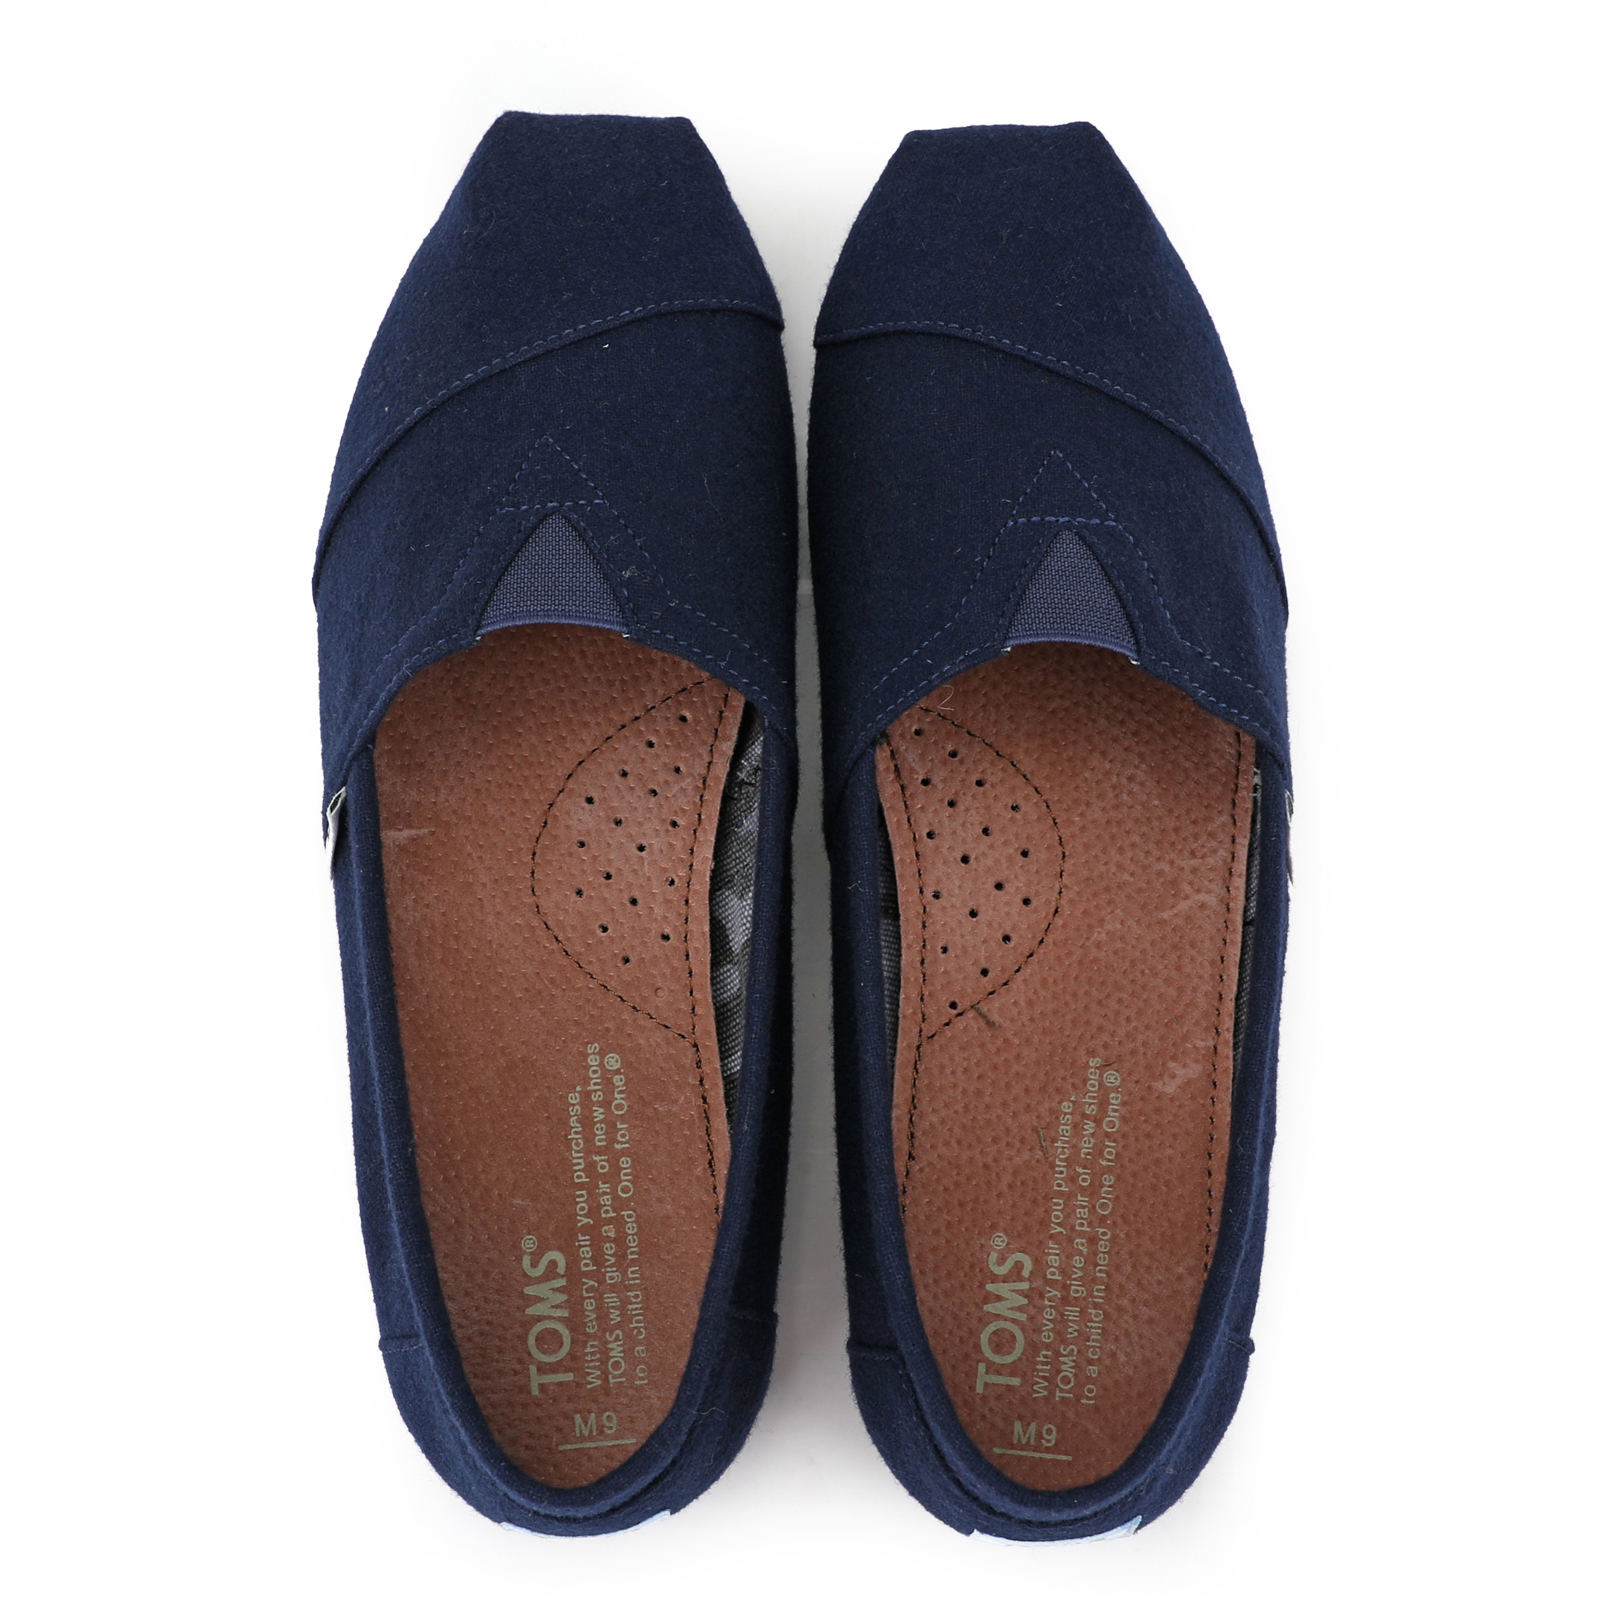 台灣Toms新款藍色法蘭絨男鞋